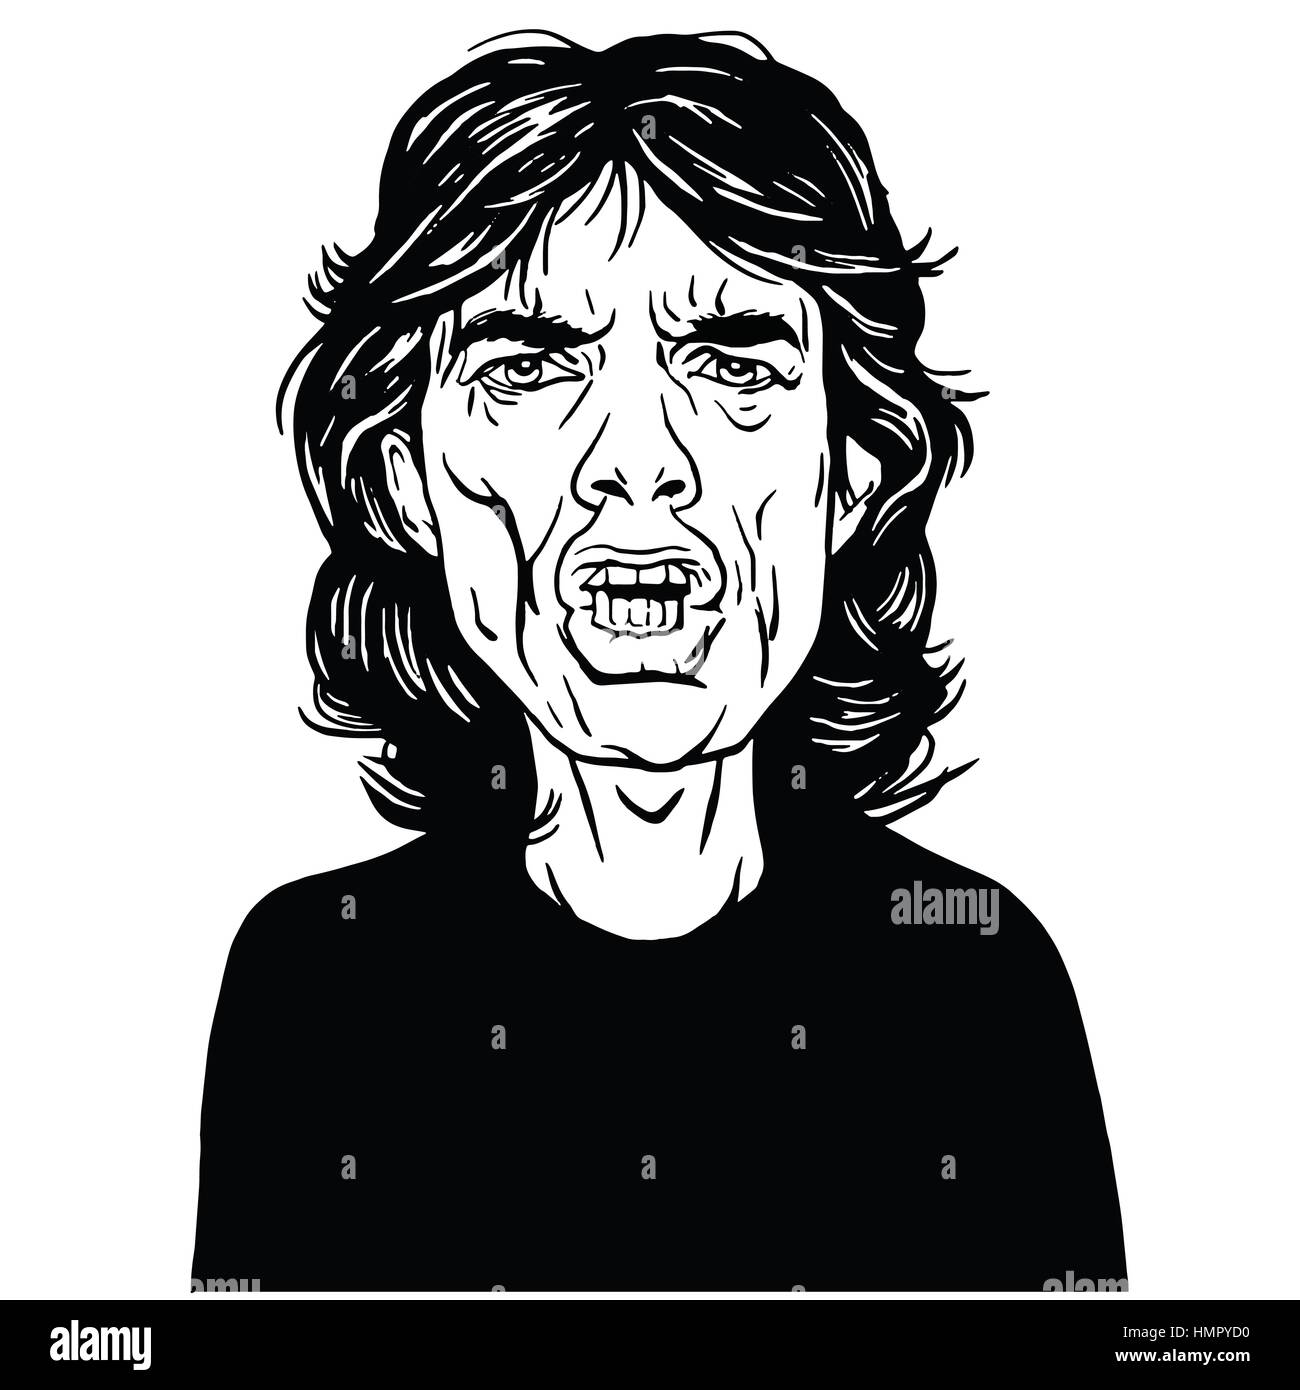 Mick Jagger disegnati a mano ritratto disegno vettoriale in bianco e nero Illustrazione Vettoriale